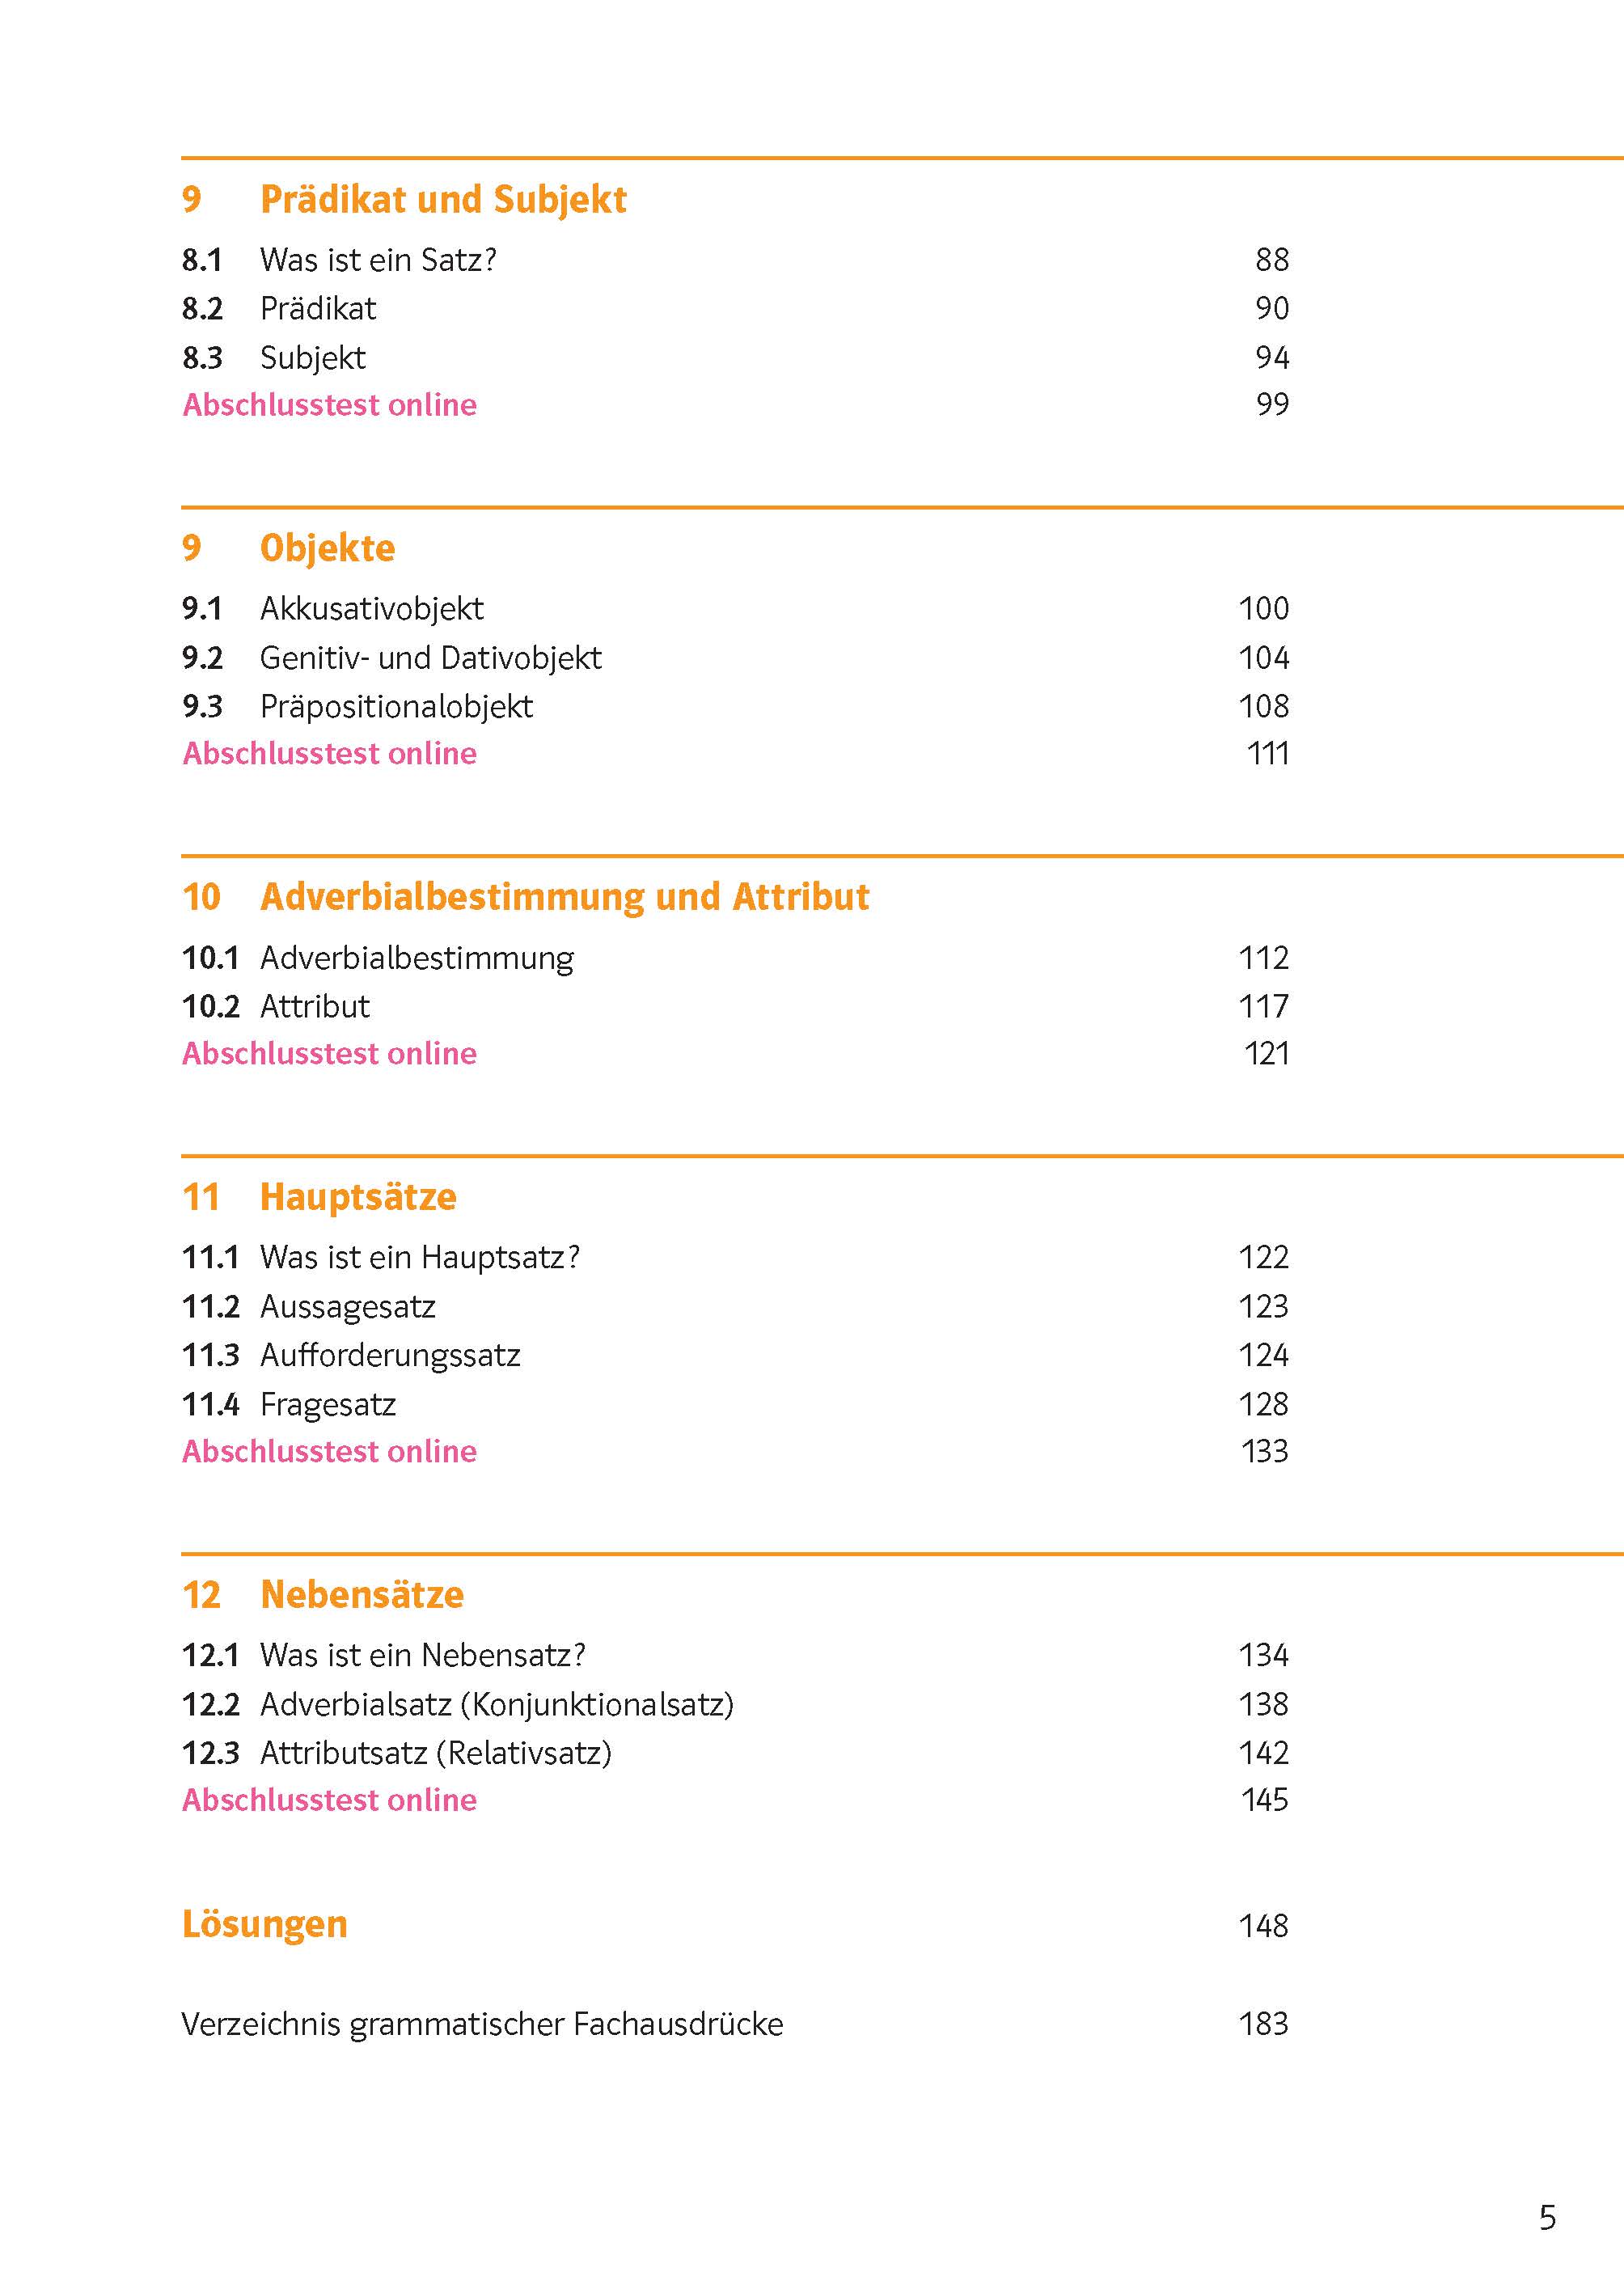 Klett Sicher in Deutsch Grammatik 5./6. Klasse